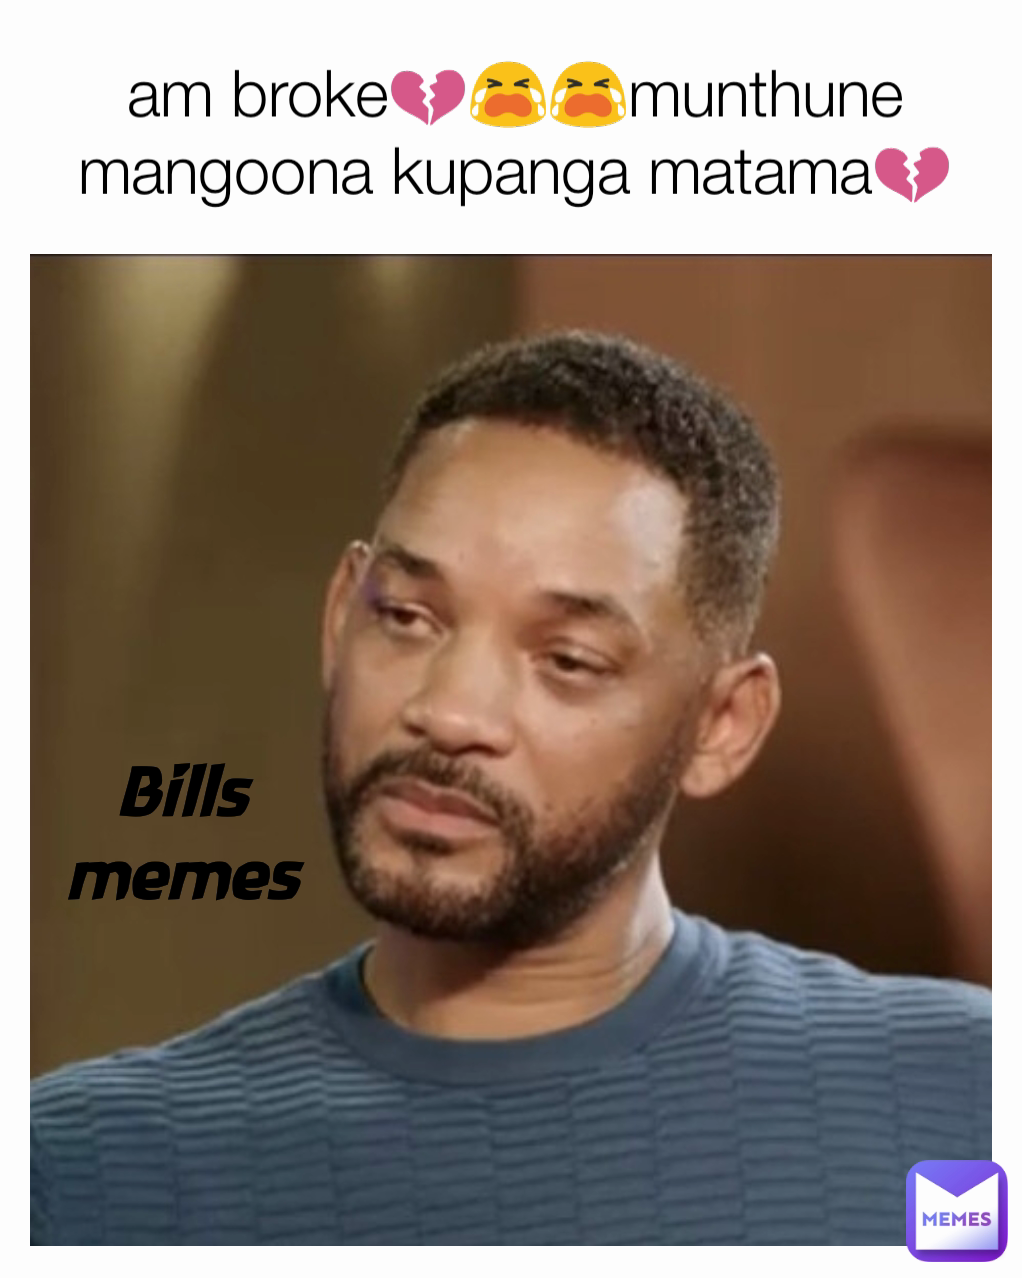 Bills memes am broke💔😭😭munthune
mangoona kupanga matama💔